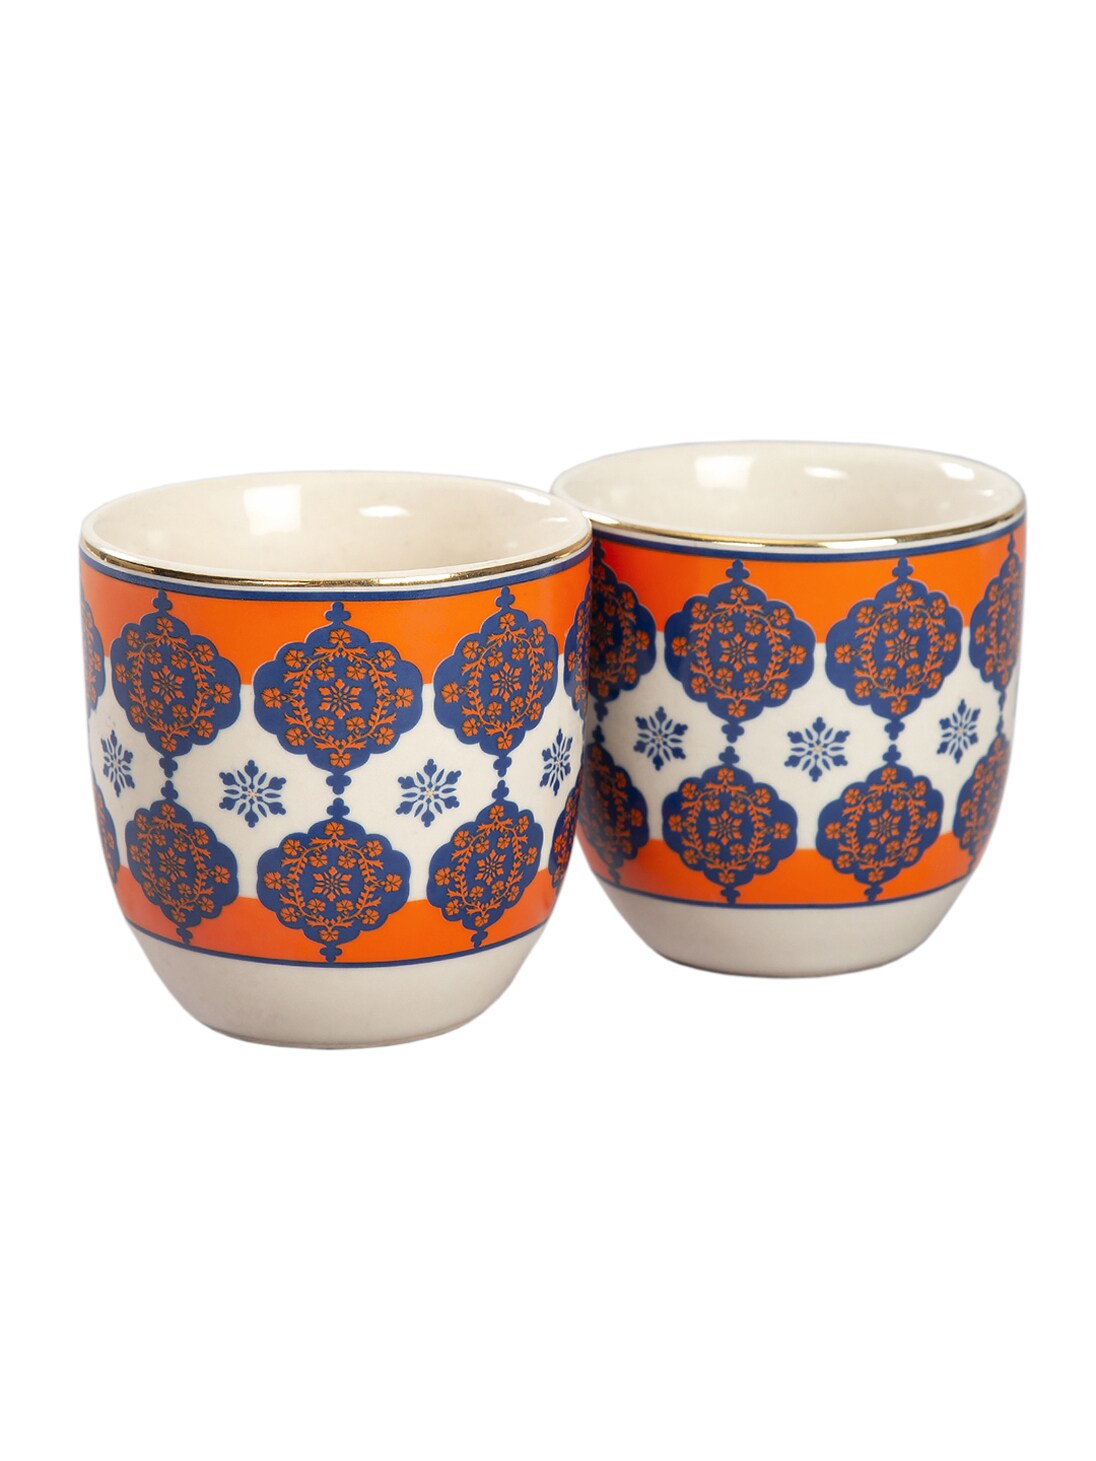 India Circus by Krsnaa Mehta Cream-Coloured & Orange 2-Pieces Printed Ceramic Kulladhs Set Price in India